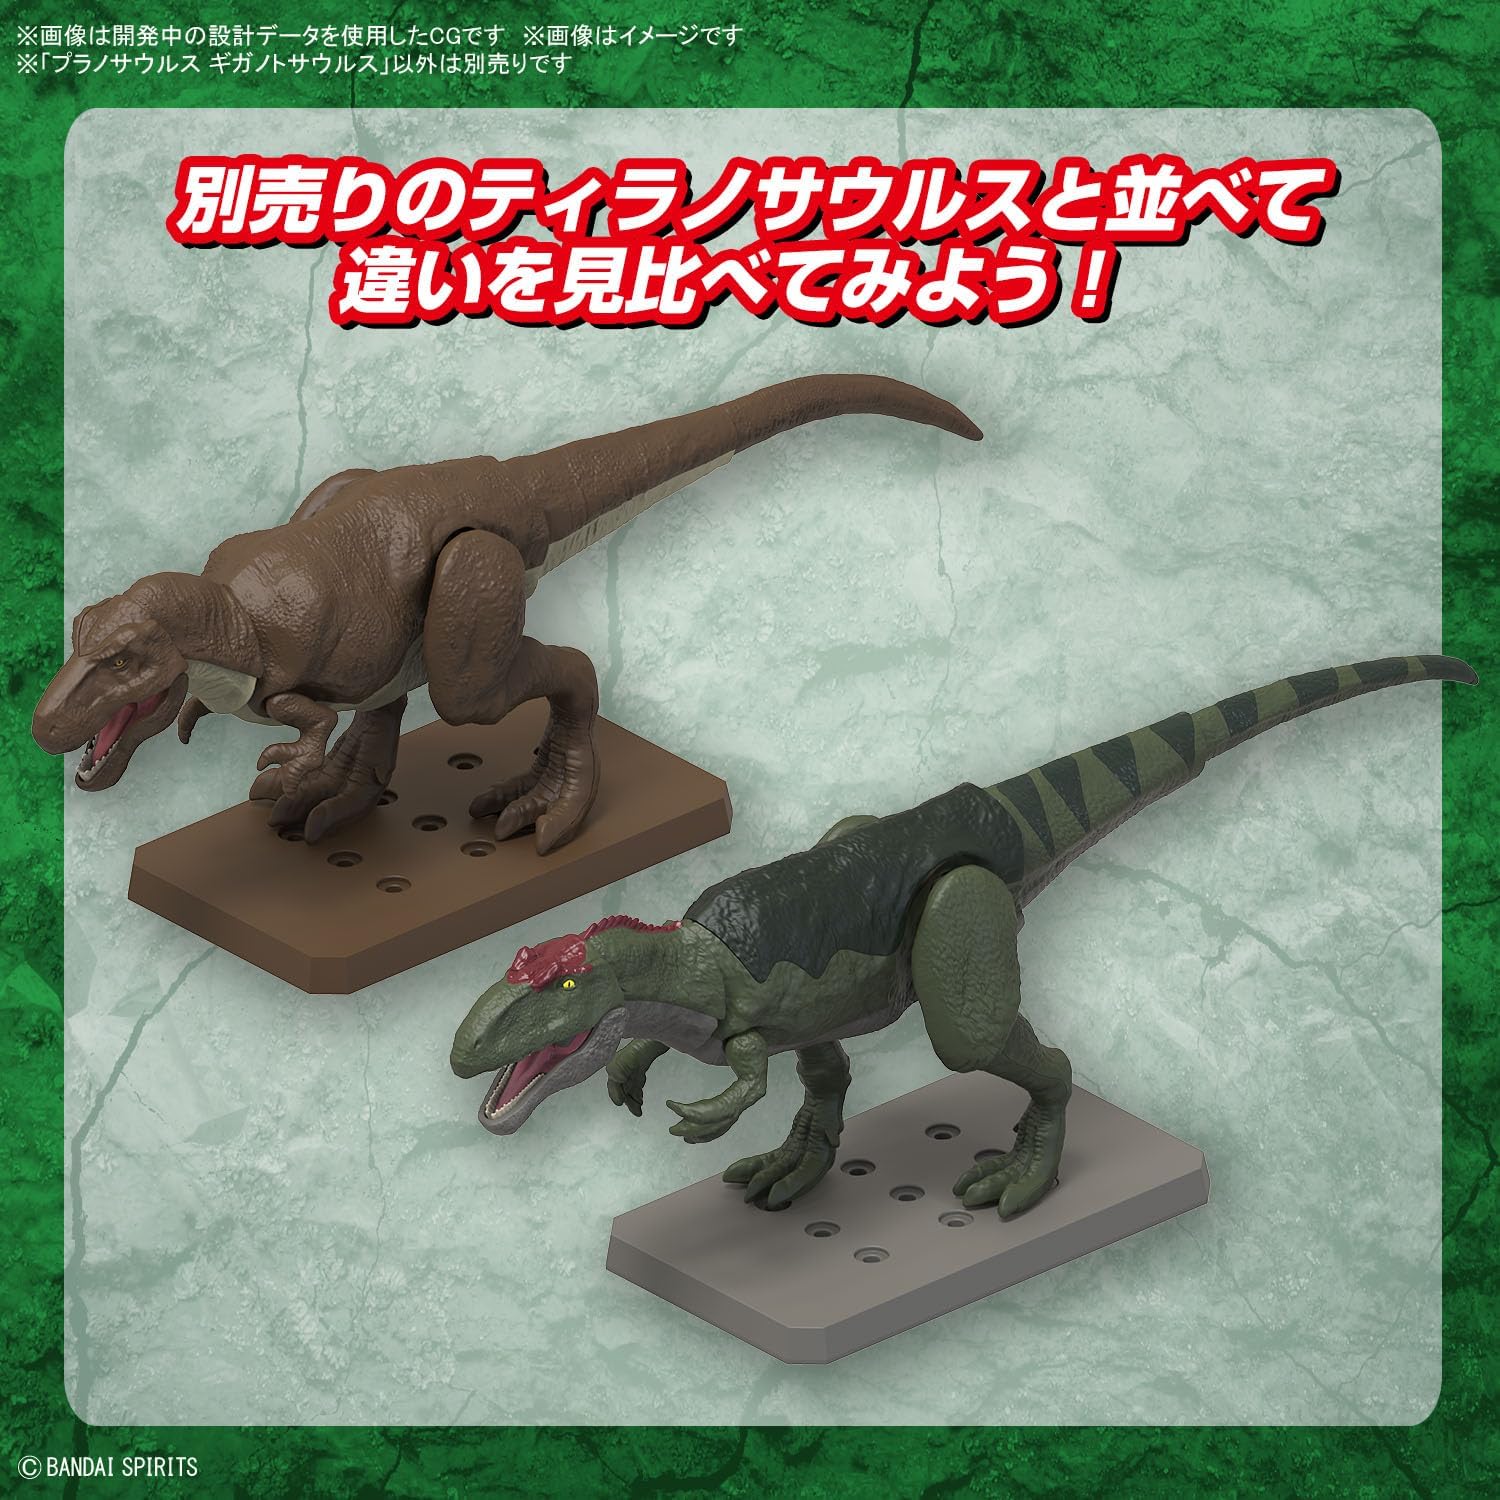 Bandai Spirits Planosaurus, Giganotosaurus - BanzaiHobby